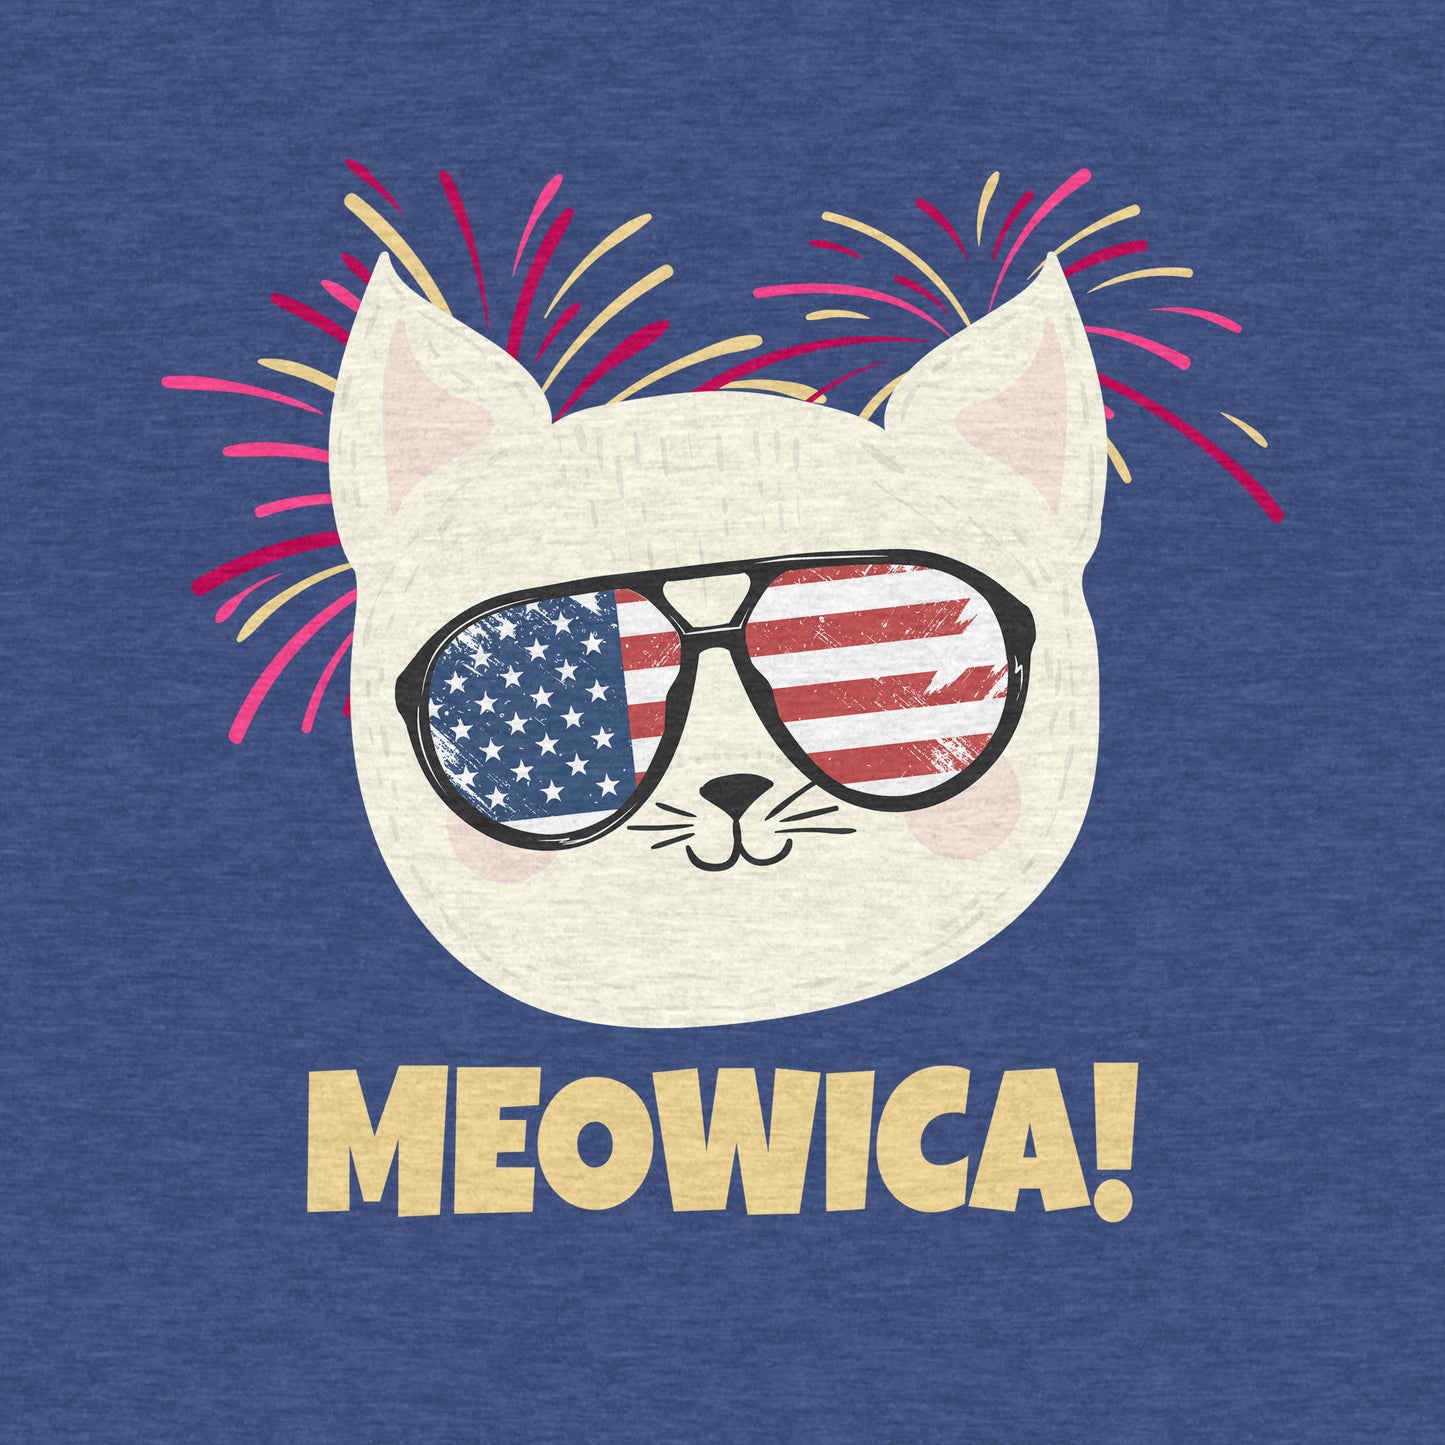 Meowica Cat, July 4th Celebration - Women’s Flex Scoop Neck Tee